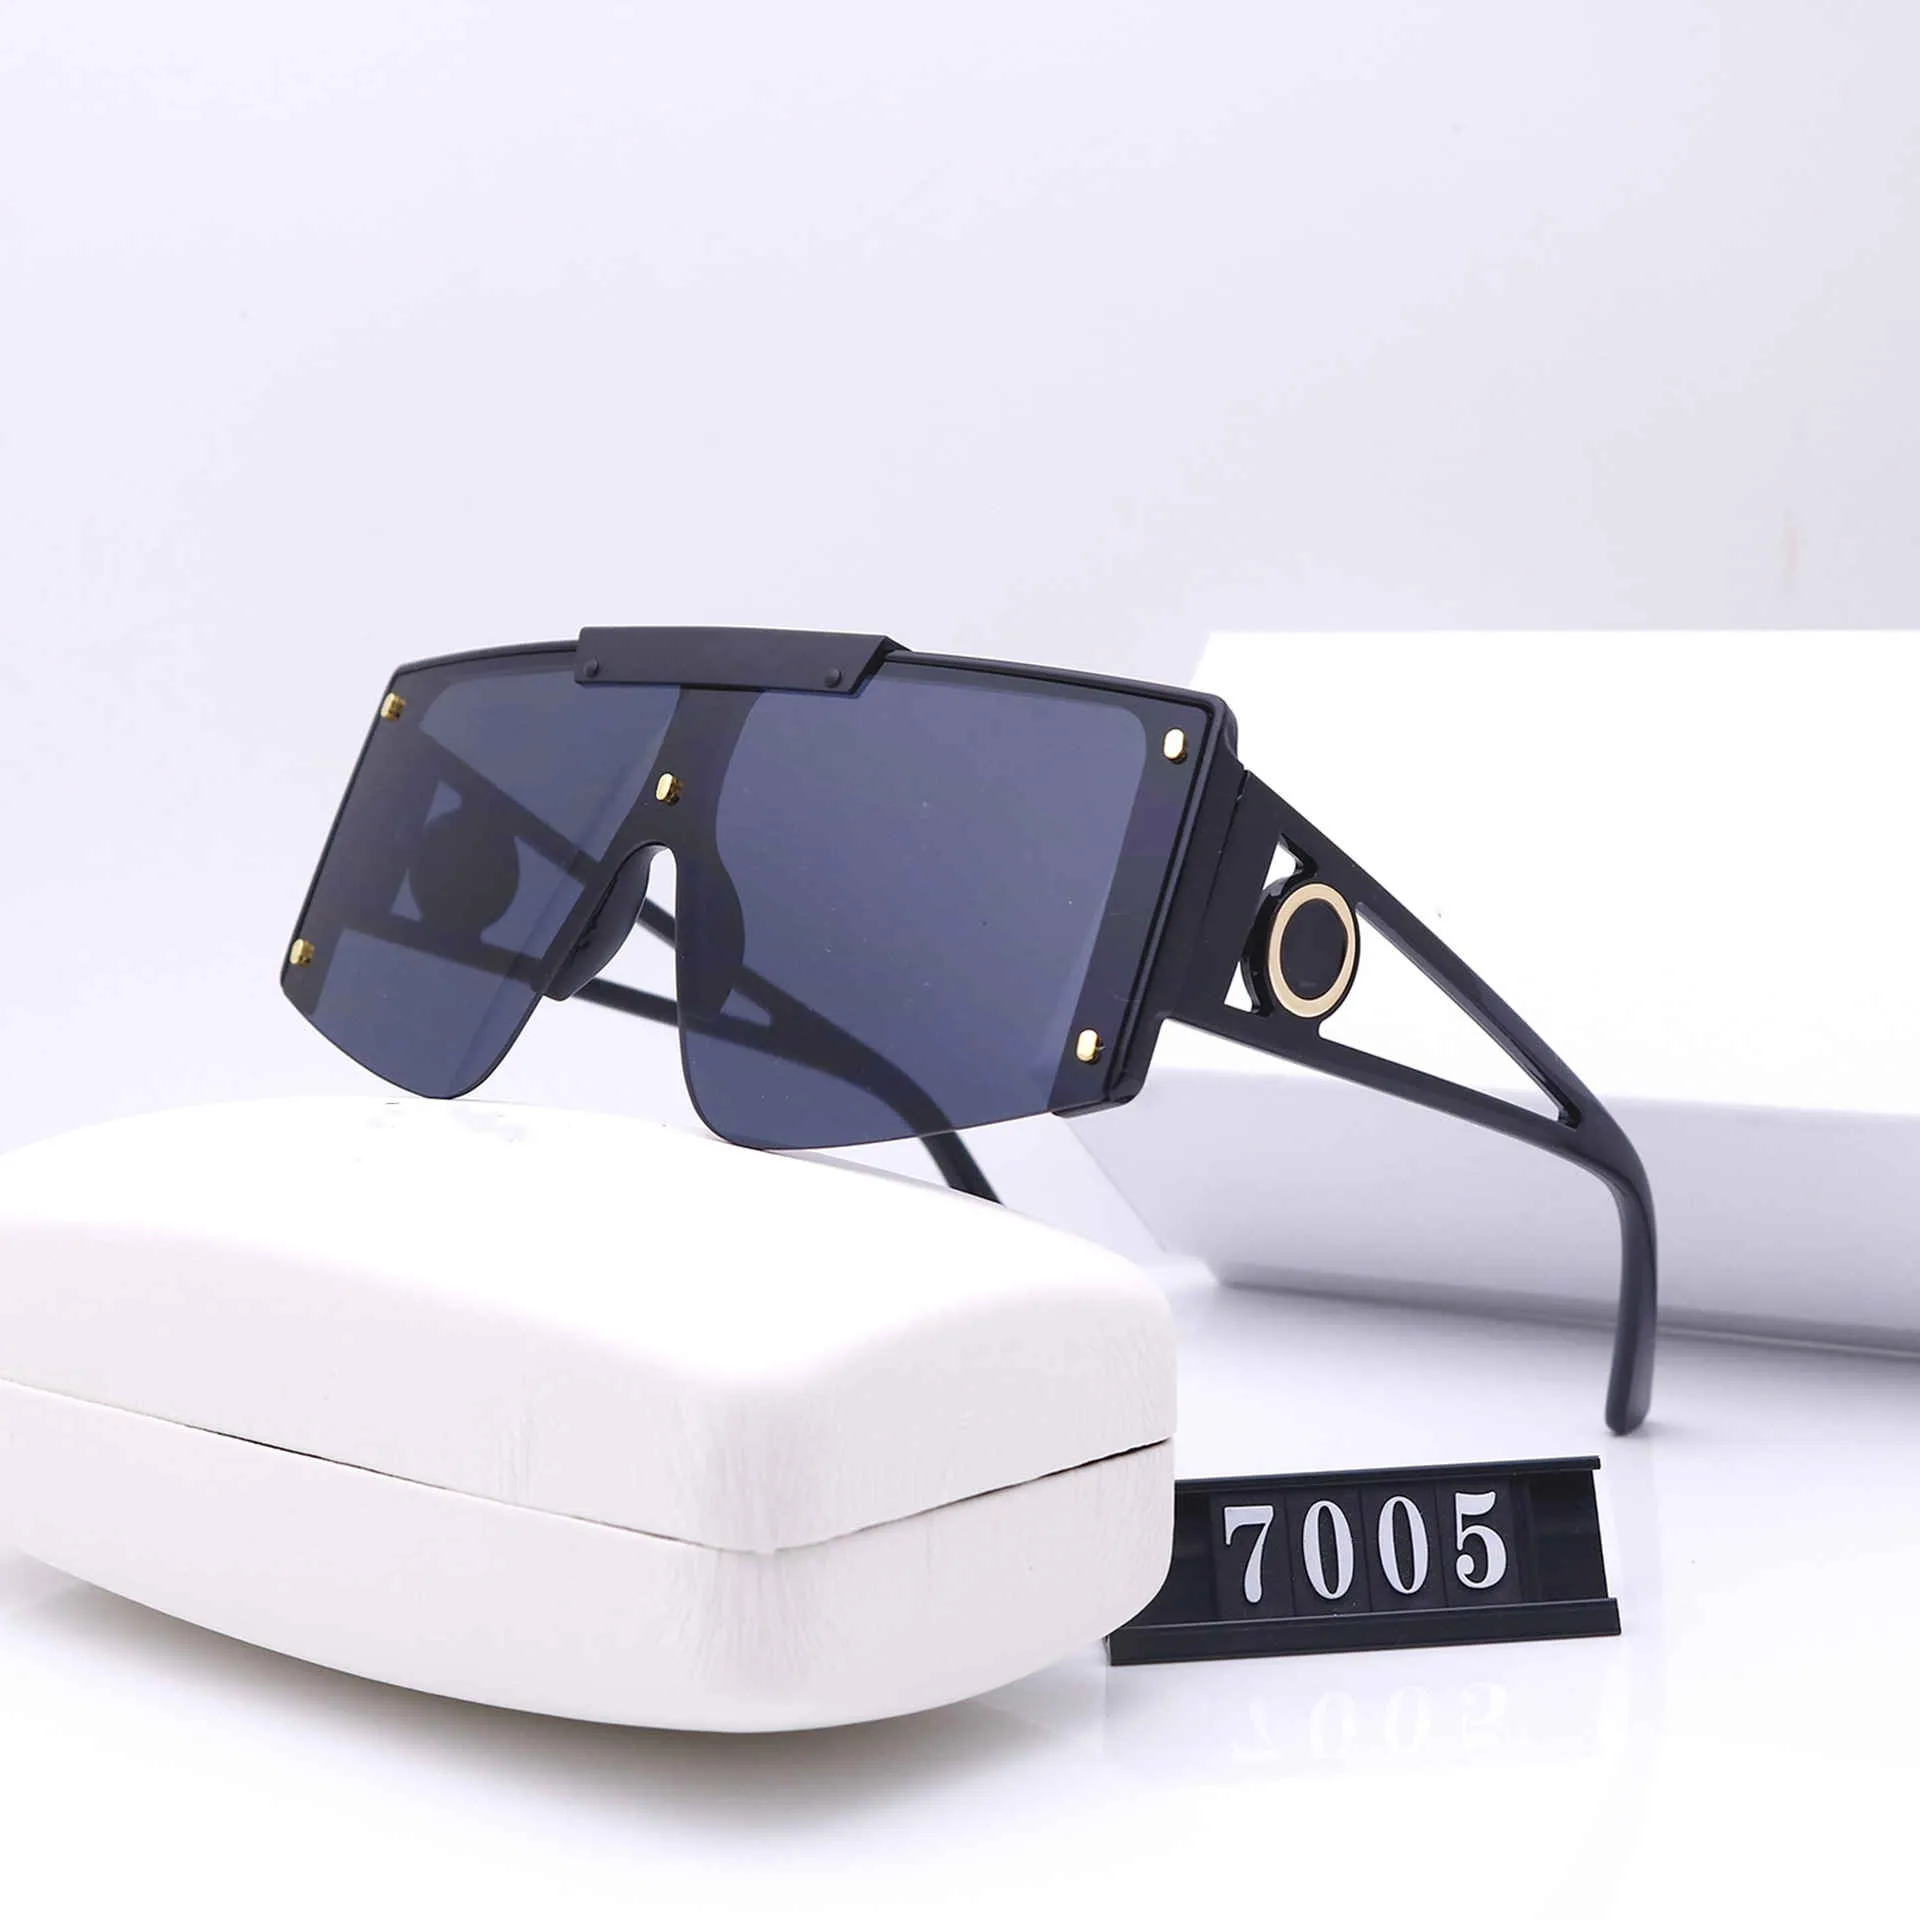 Лидер продаж, винтажные солнцезащитные очки-пилот, поляризационные солнцезащитные очки UV400 для мужчин и женщин, ftghdzshg, солнцезащитные очки Eragarg Fsrhjndtjfk esfgjhfvj